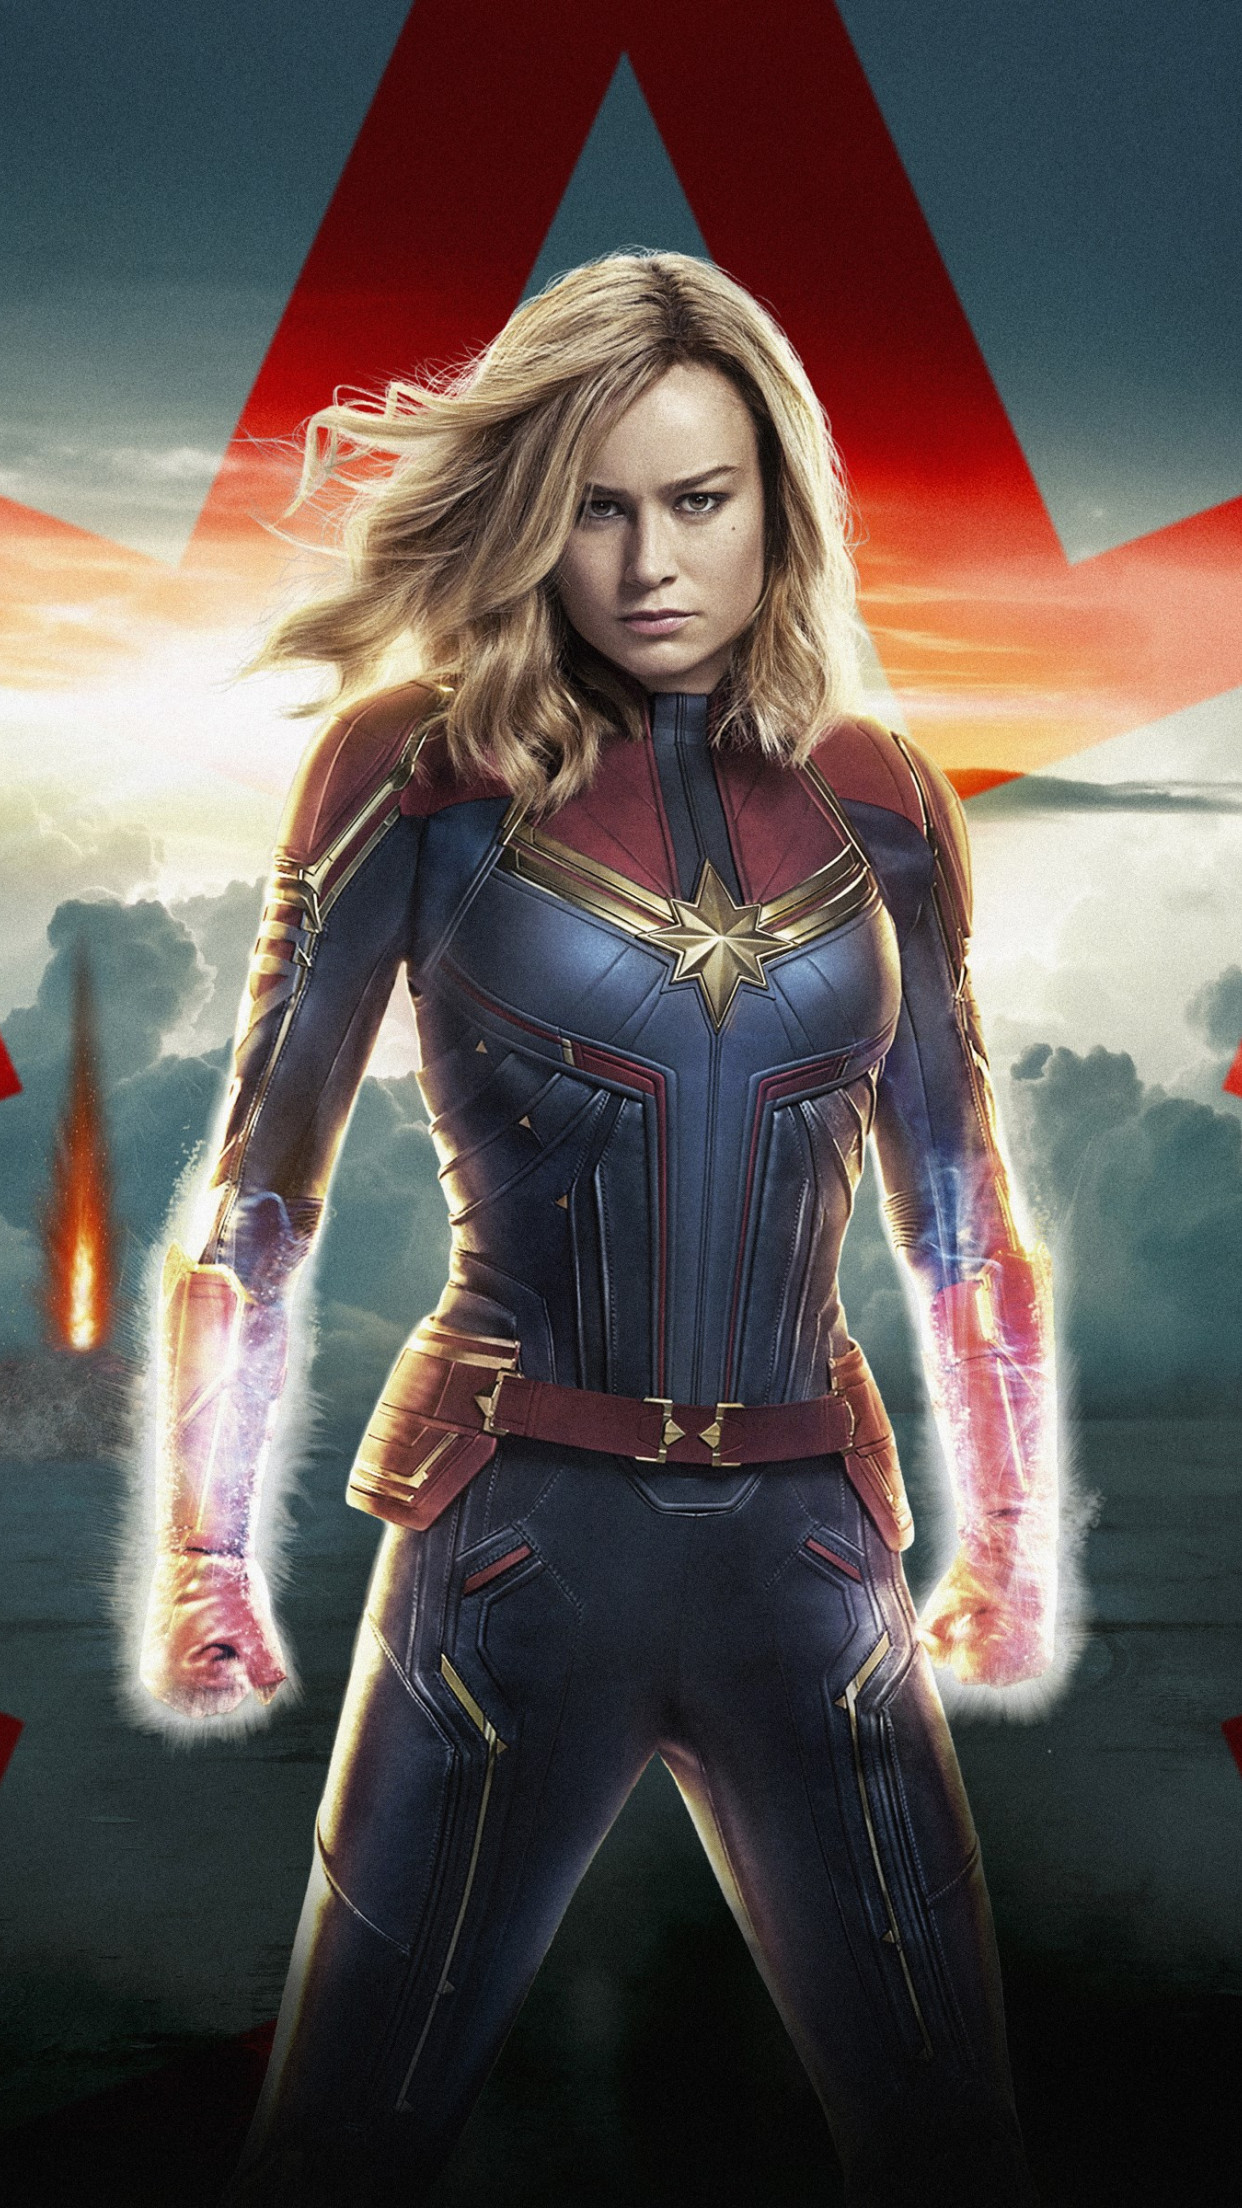 Captain Marvel poster wallpaper 1242x2208